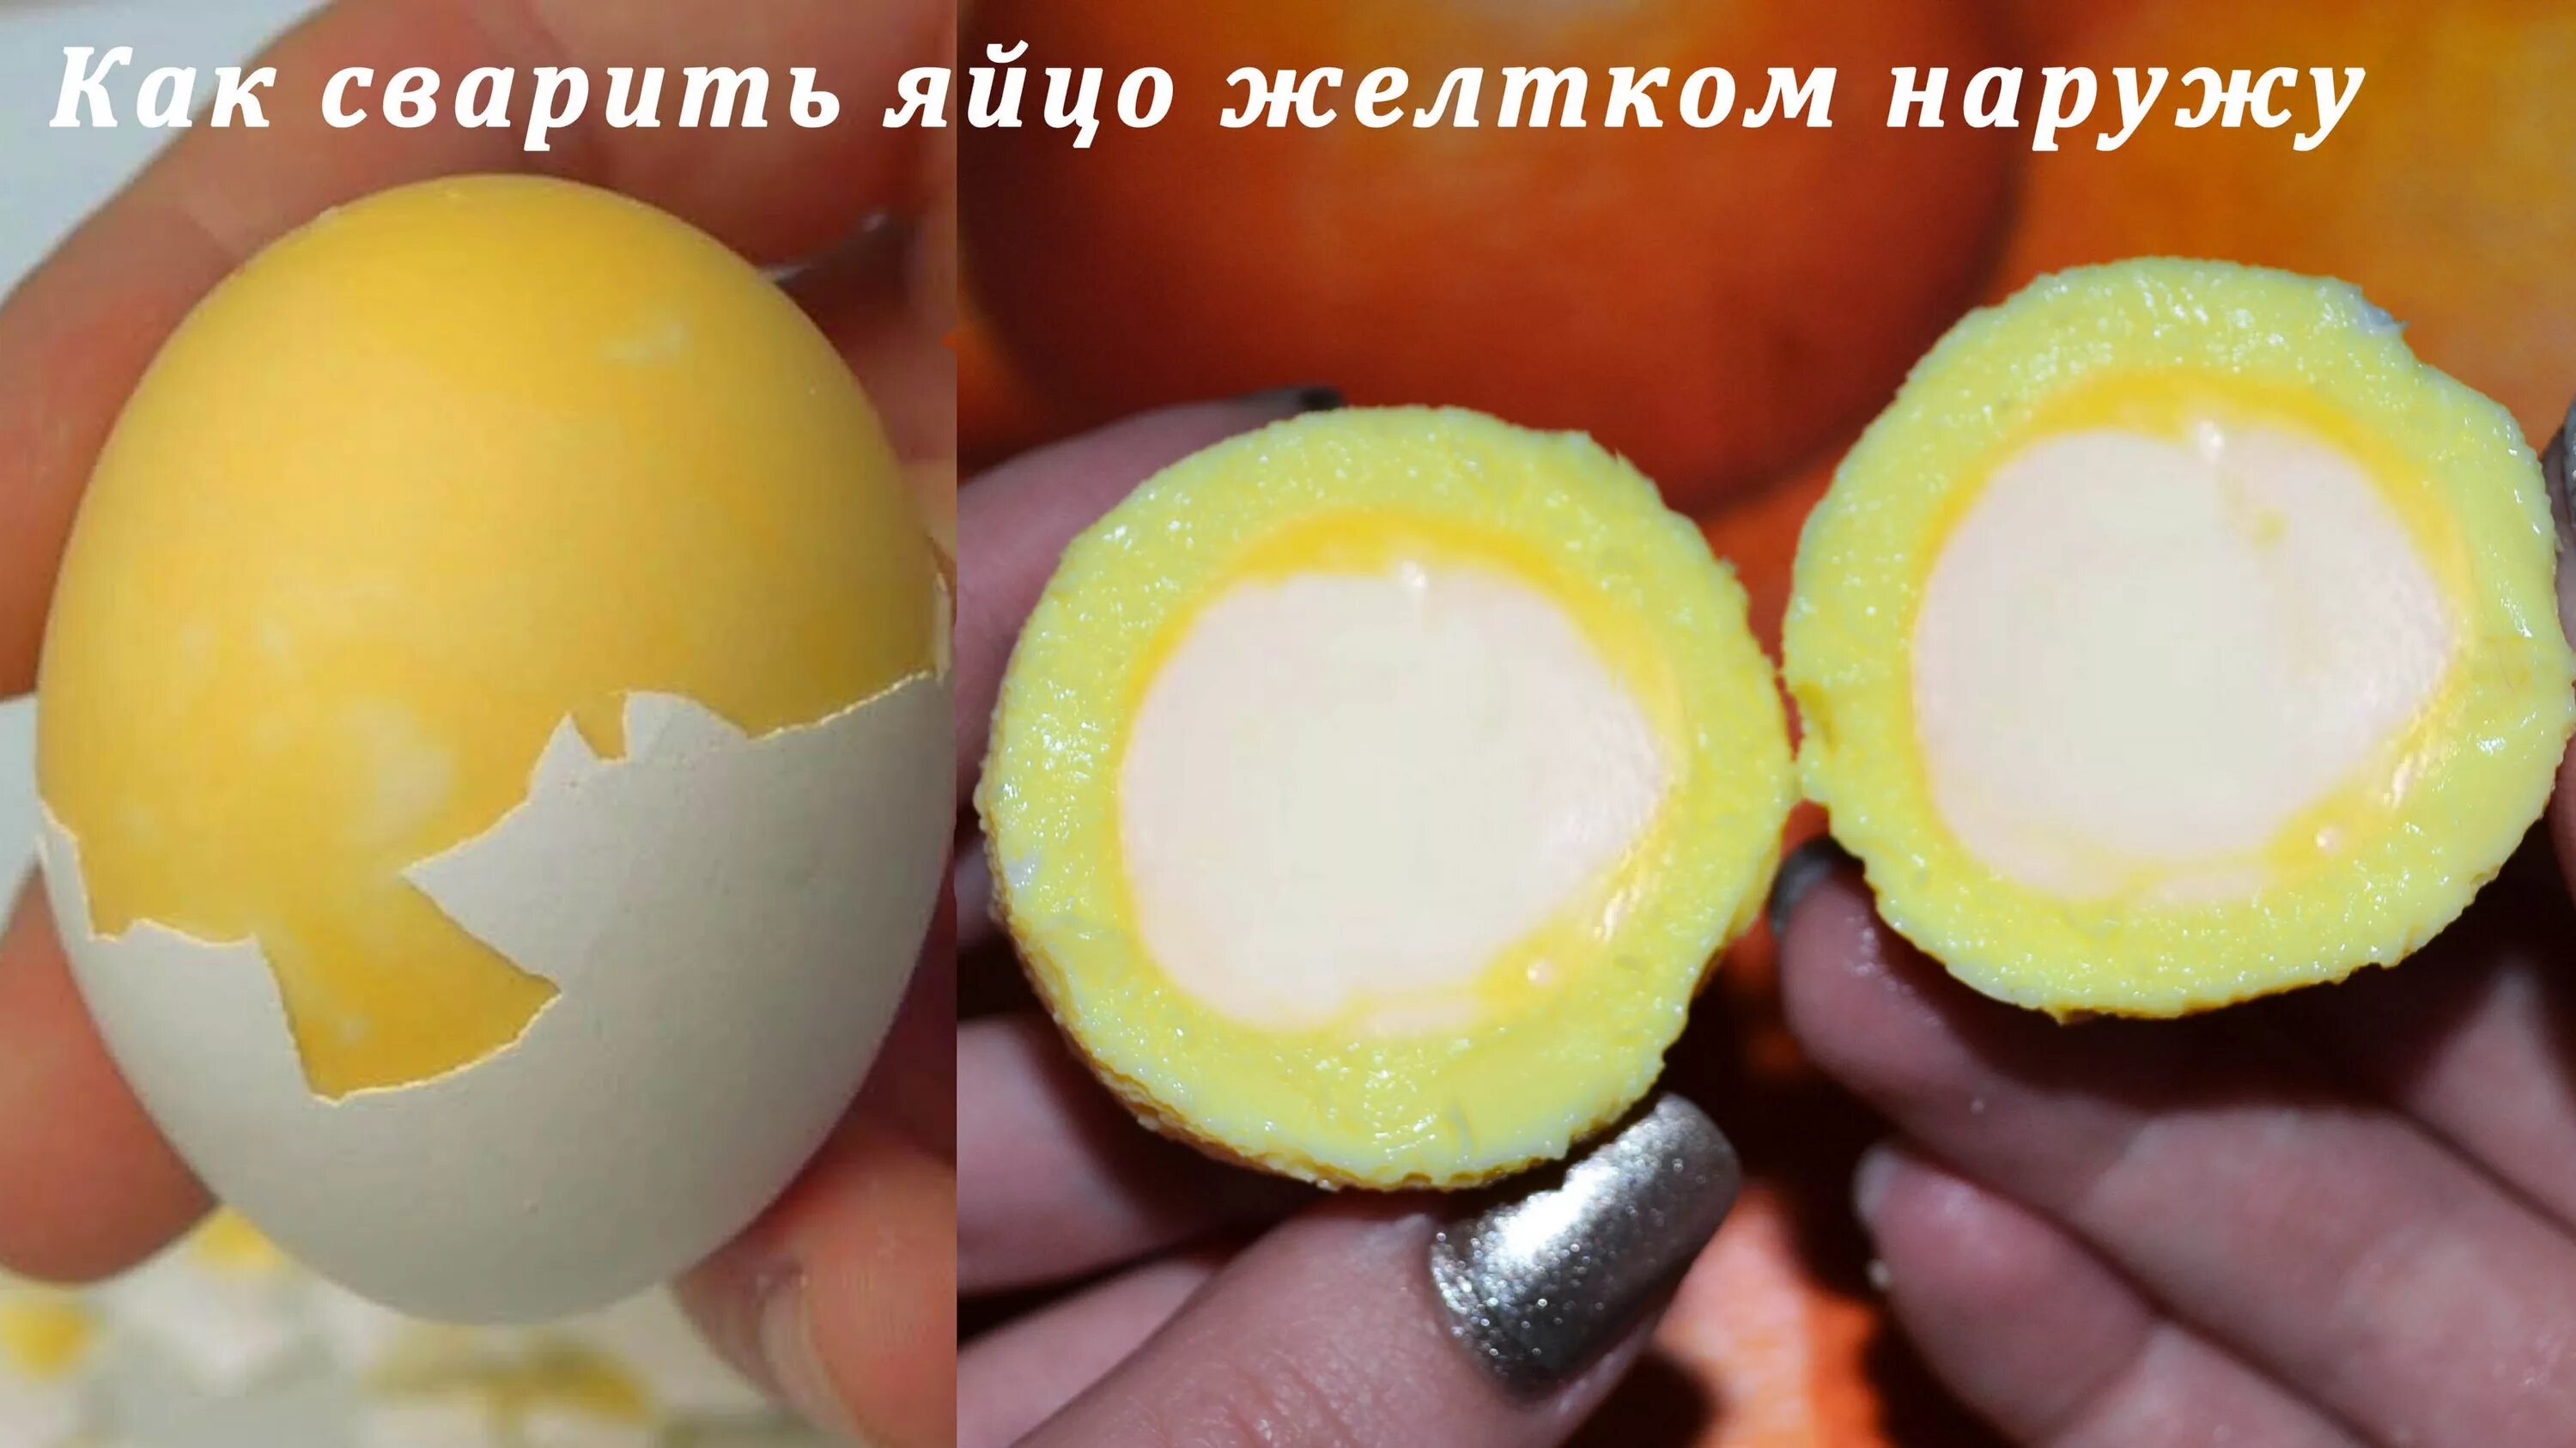 Яйцо желтком наружу. Как сварить яйца. Вареное яйцо желтком наружу. Как отварить яйца.